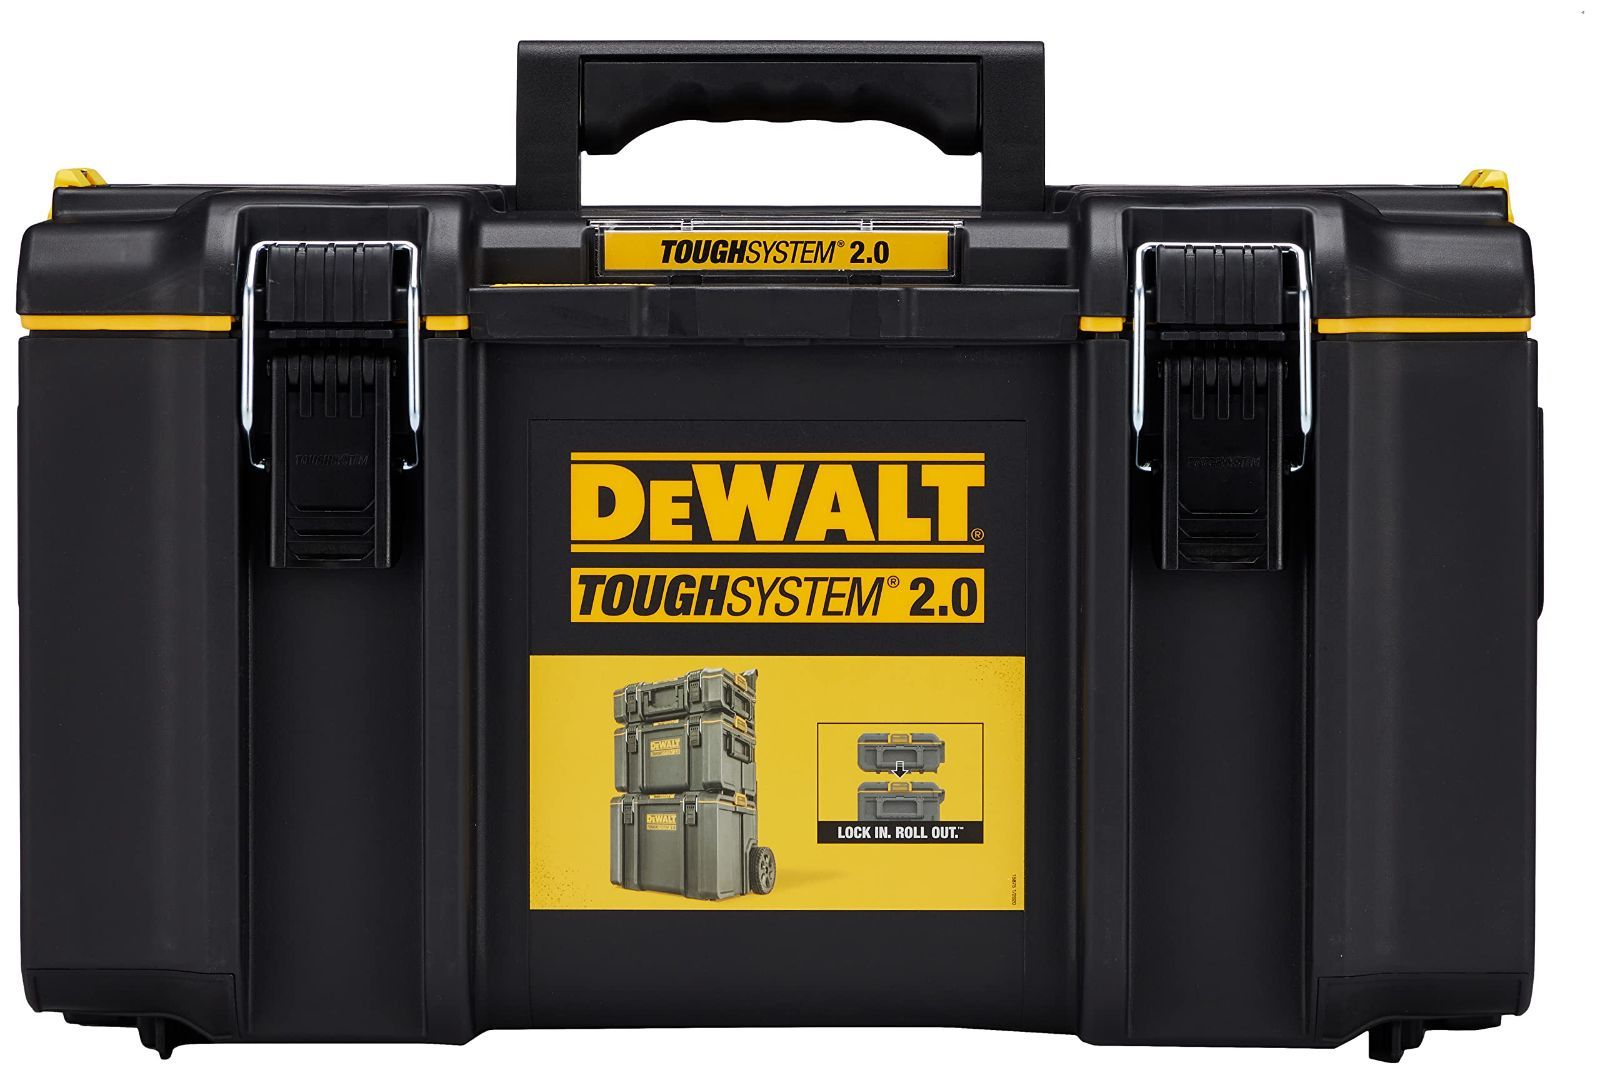 DEWALT デウォルト DWST83294-1 タフシステム2.0 DS300 品番 DWST83294-1 ツールボックス ツールBOX 道具箱 収納 ケース 電工 電設